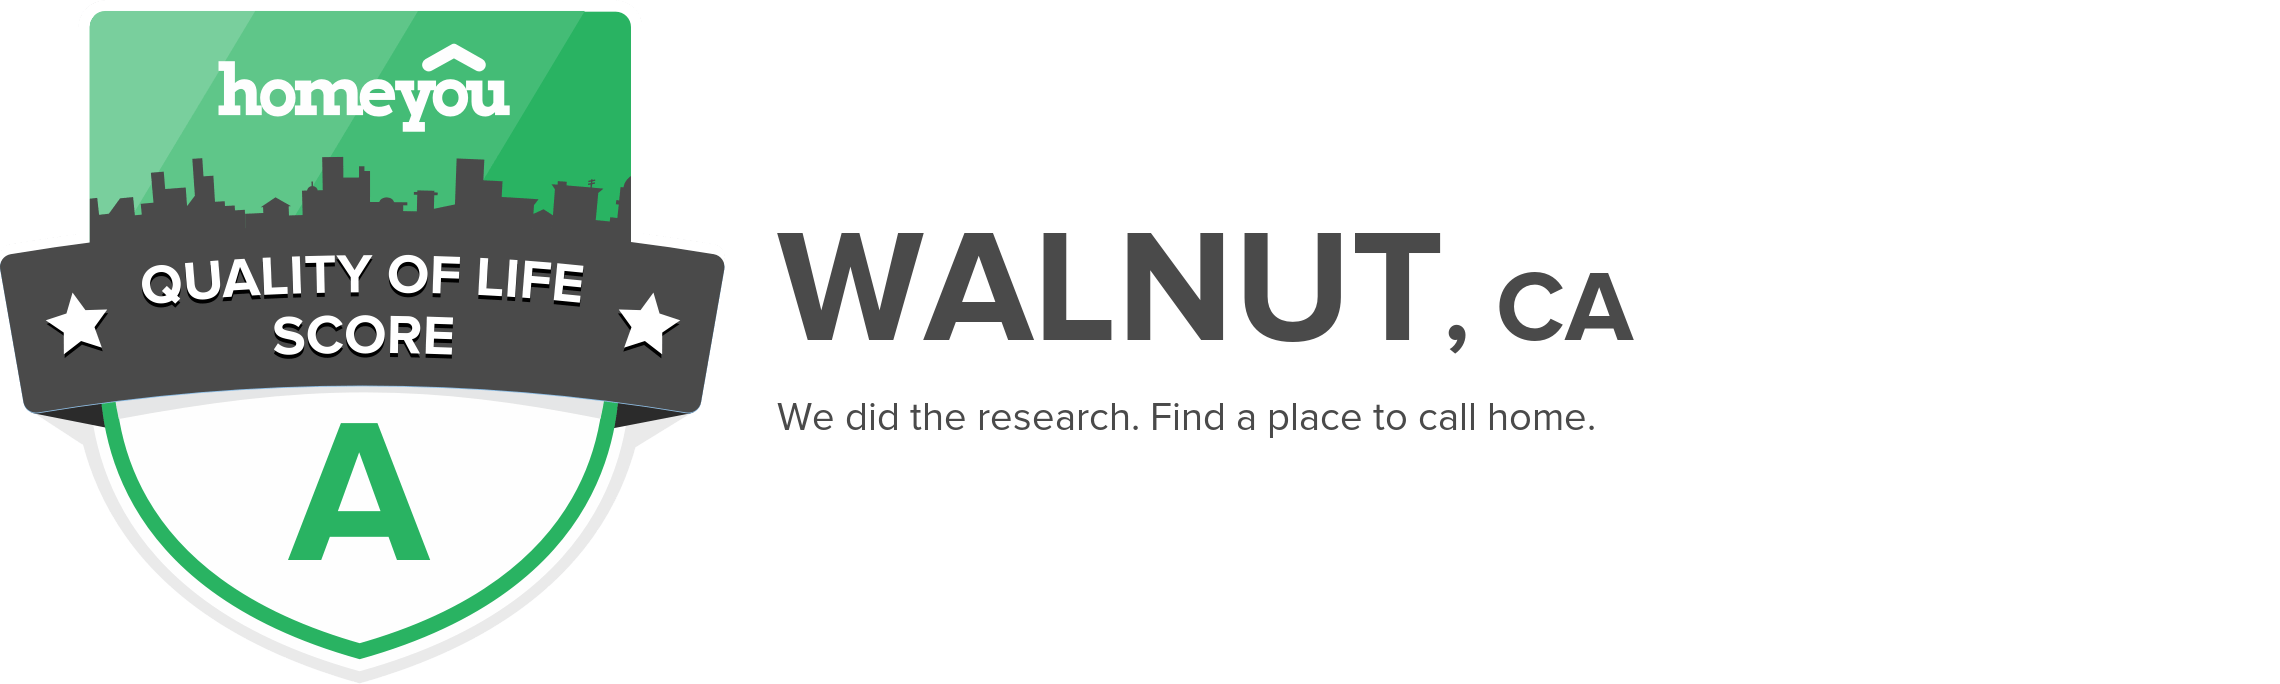 Walnut, CA